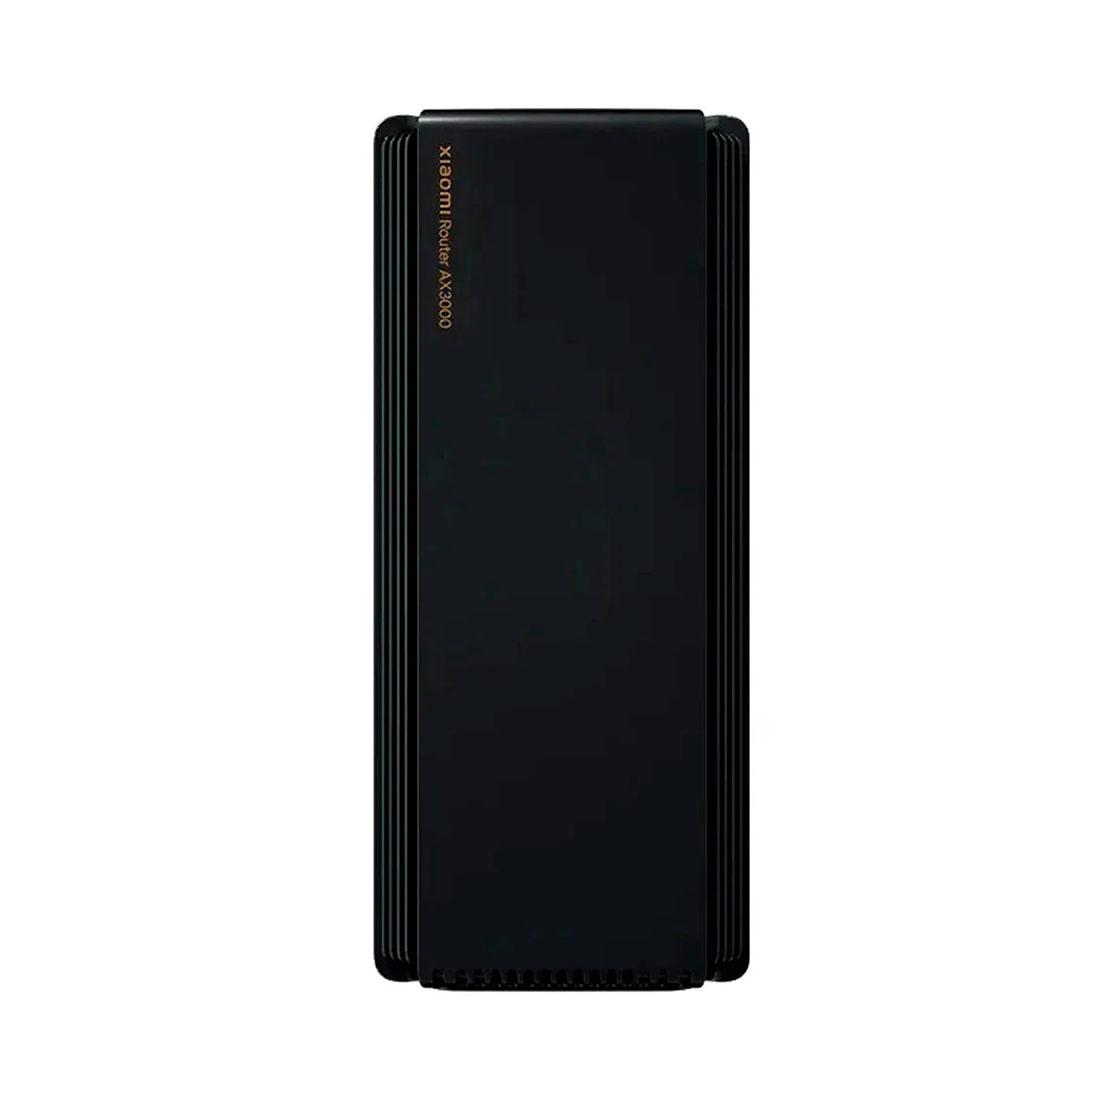 Xiaomi mi ax1800